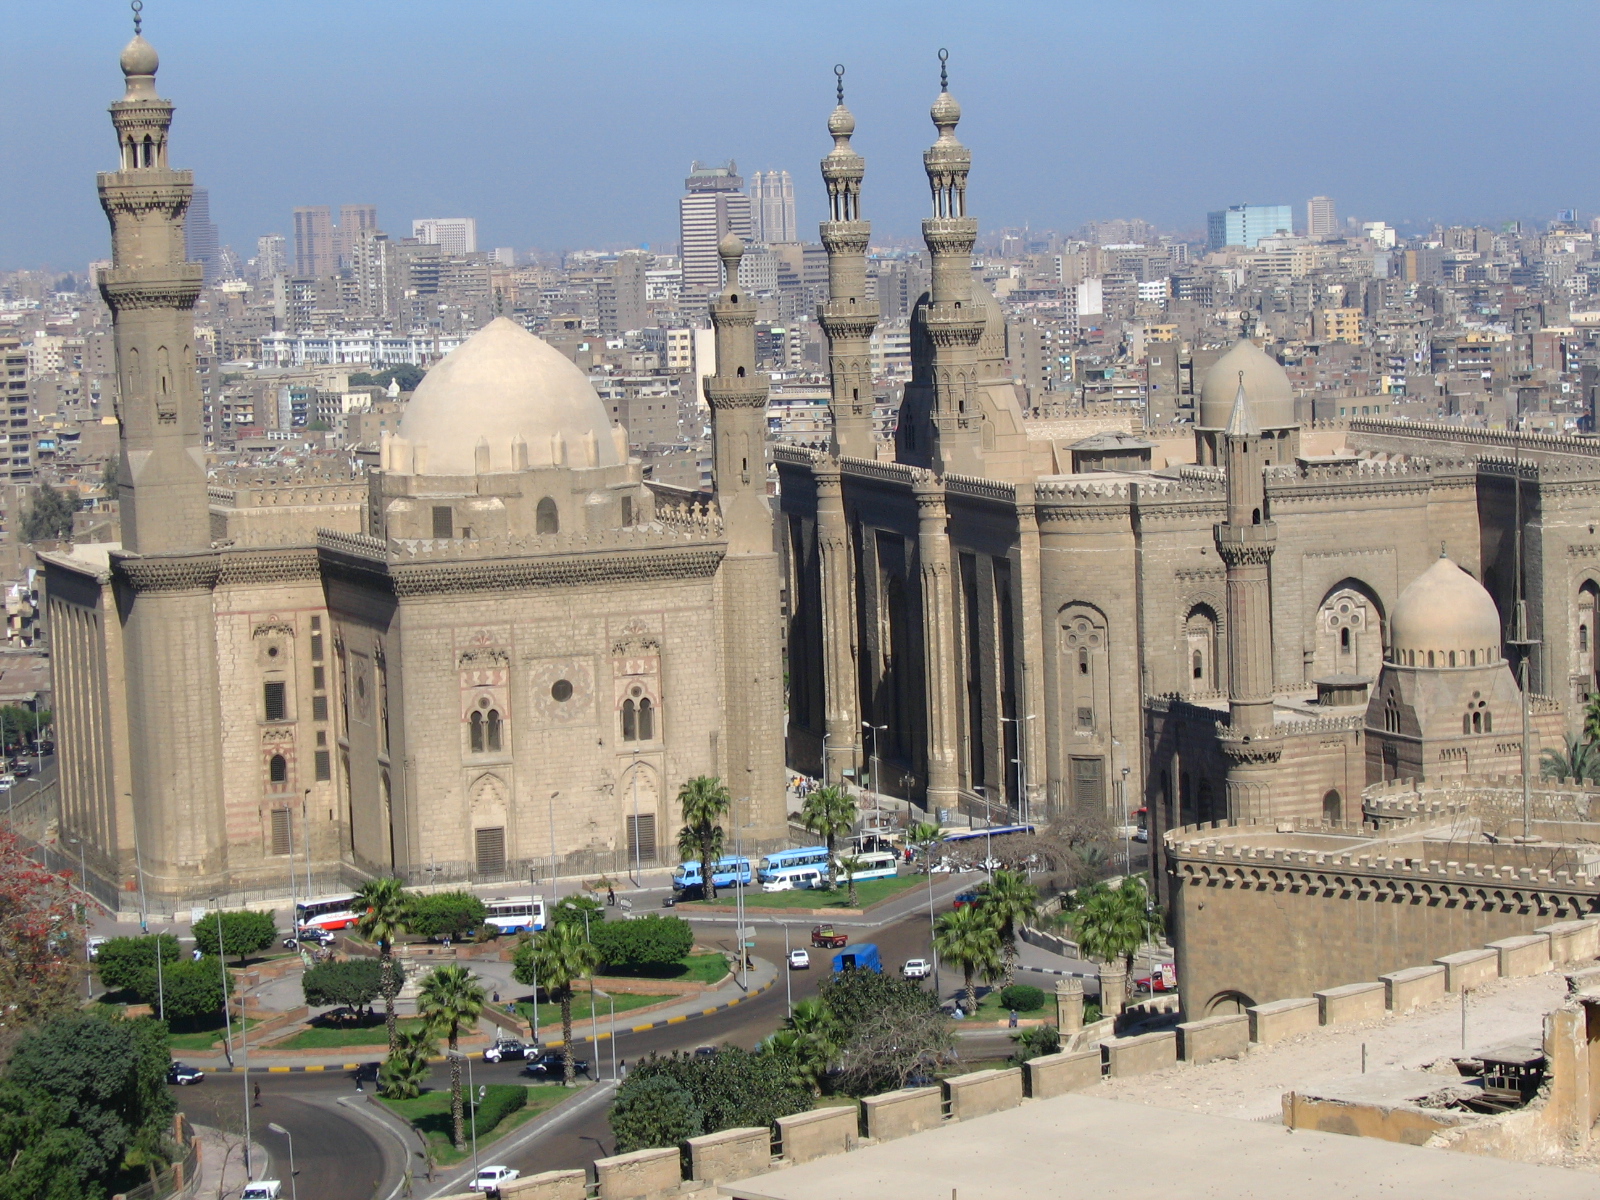 Magyar-egyiptomi gazdasági fórumot tartottak Kairóban